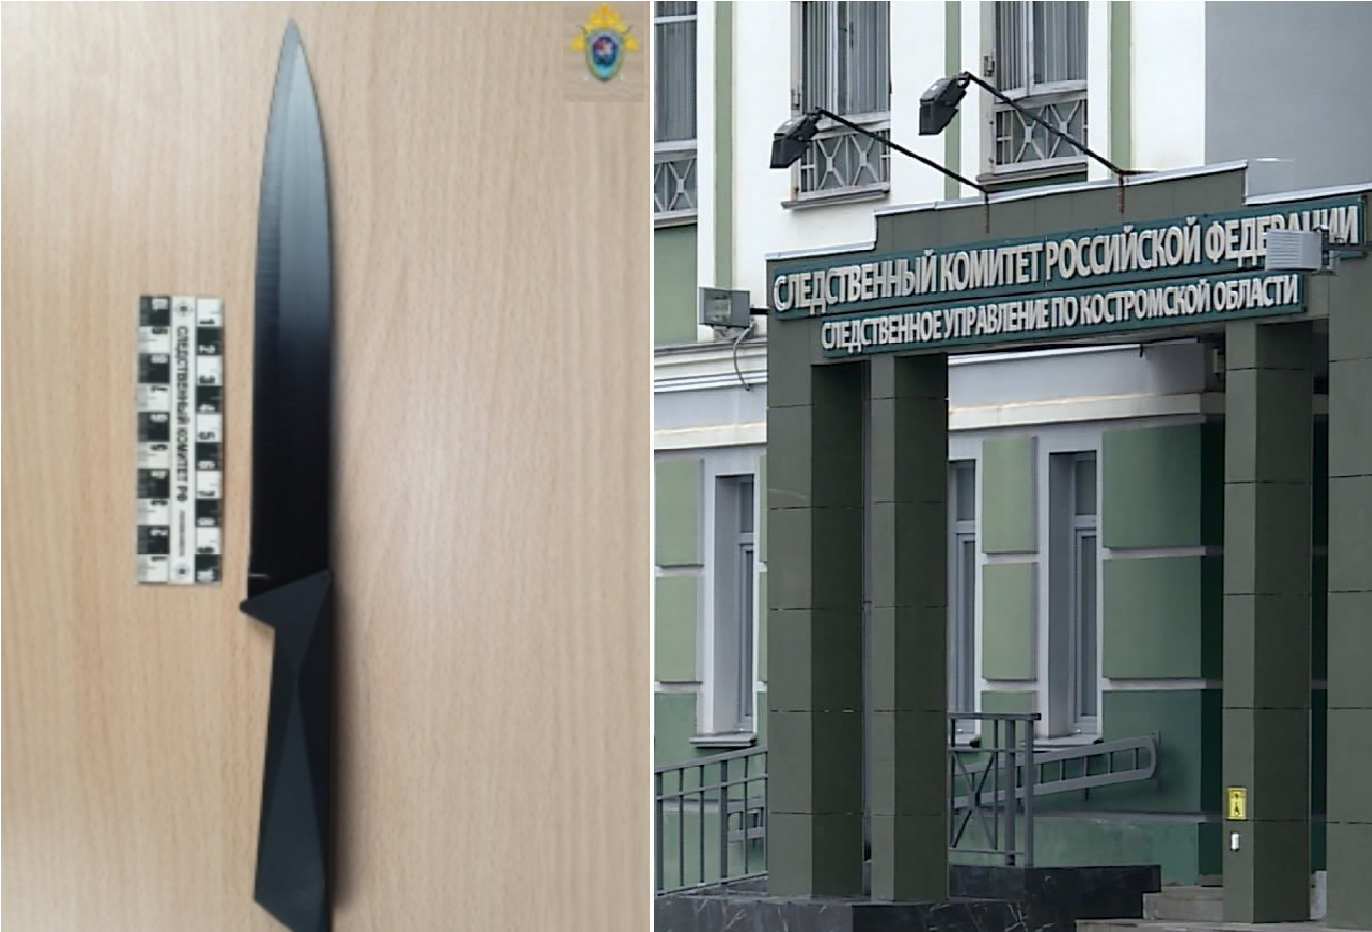 Пожилой житель Костромы обвиняется в совершении убийства